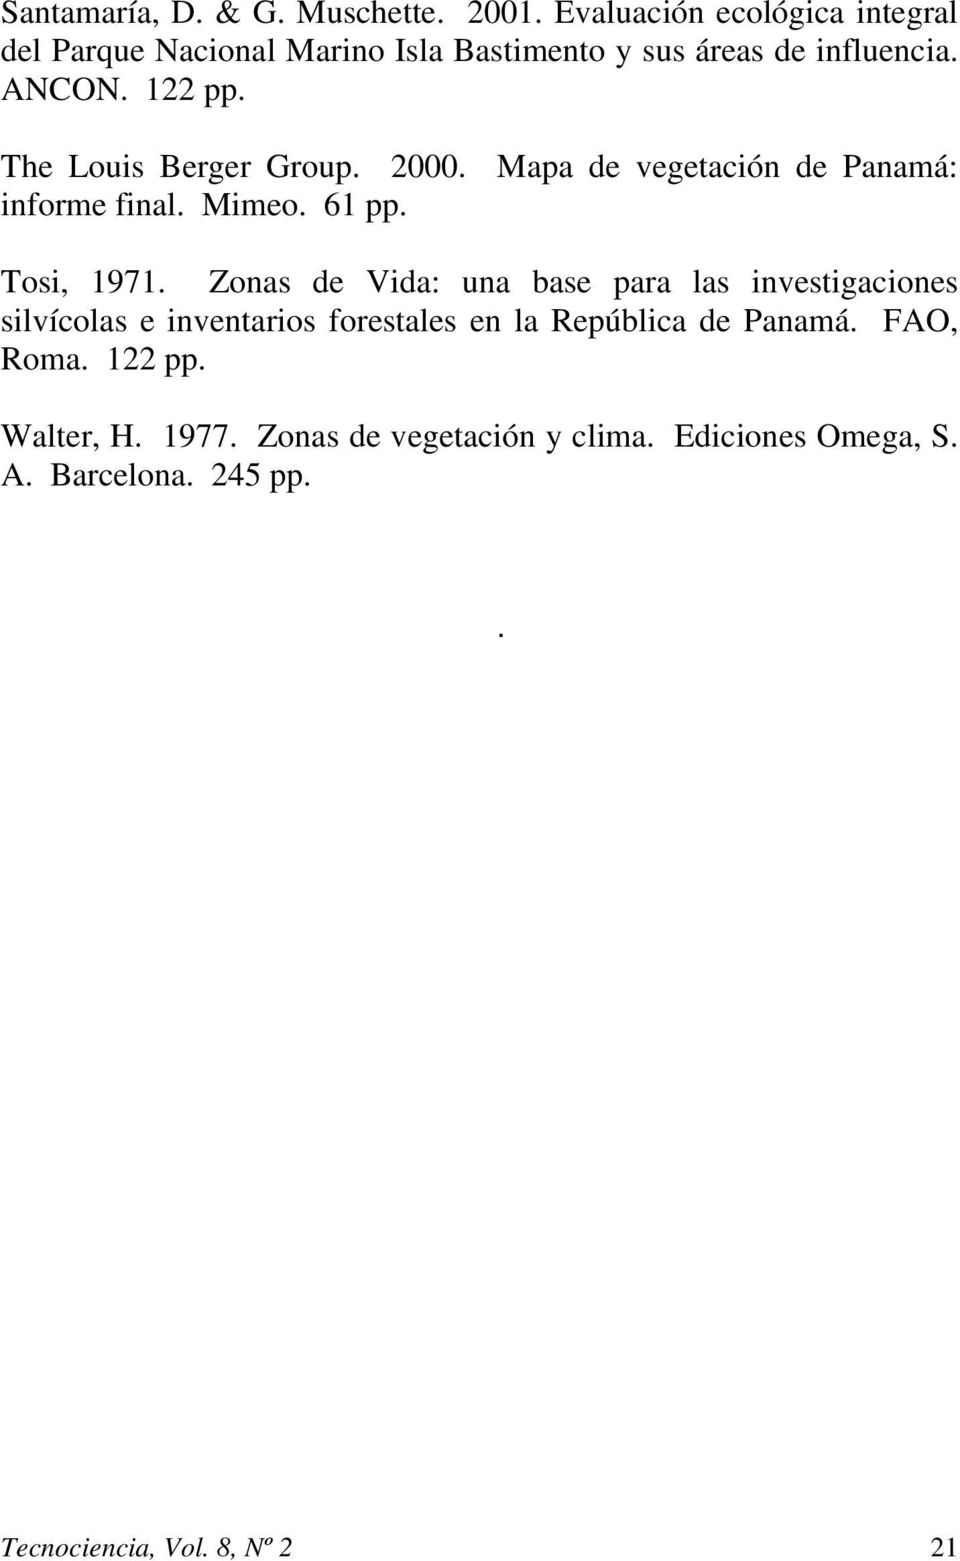 The Louis Berger Group. 2000. Mapa de vegetación de Panamá: informe final. Mimeo. 61 pp. Tosi, 1971.